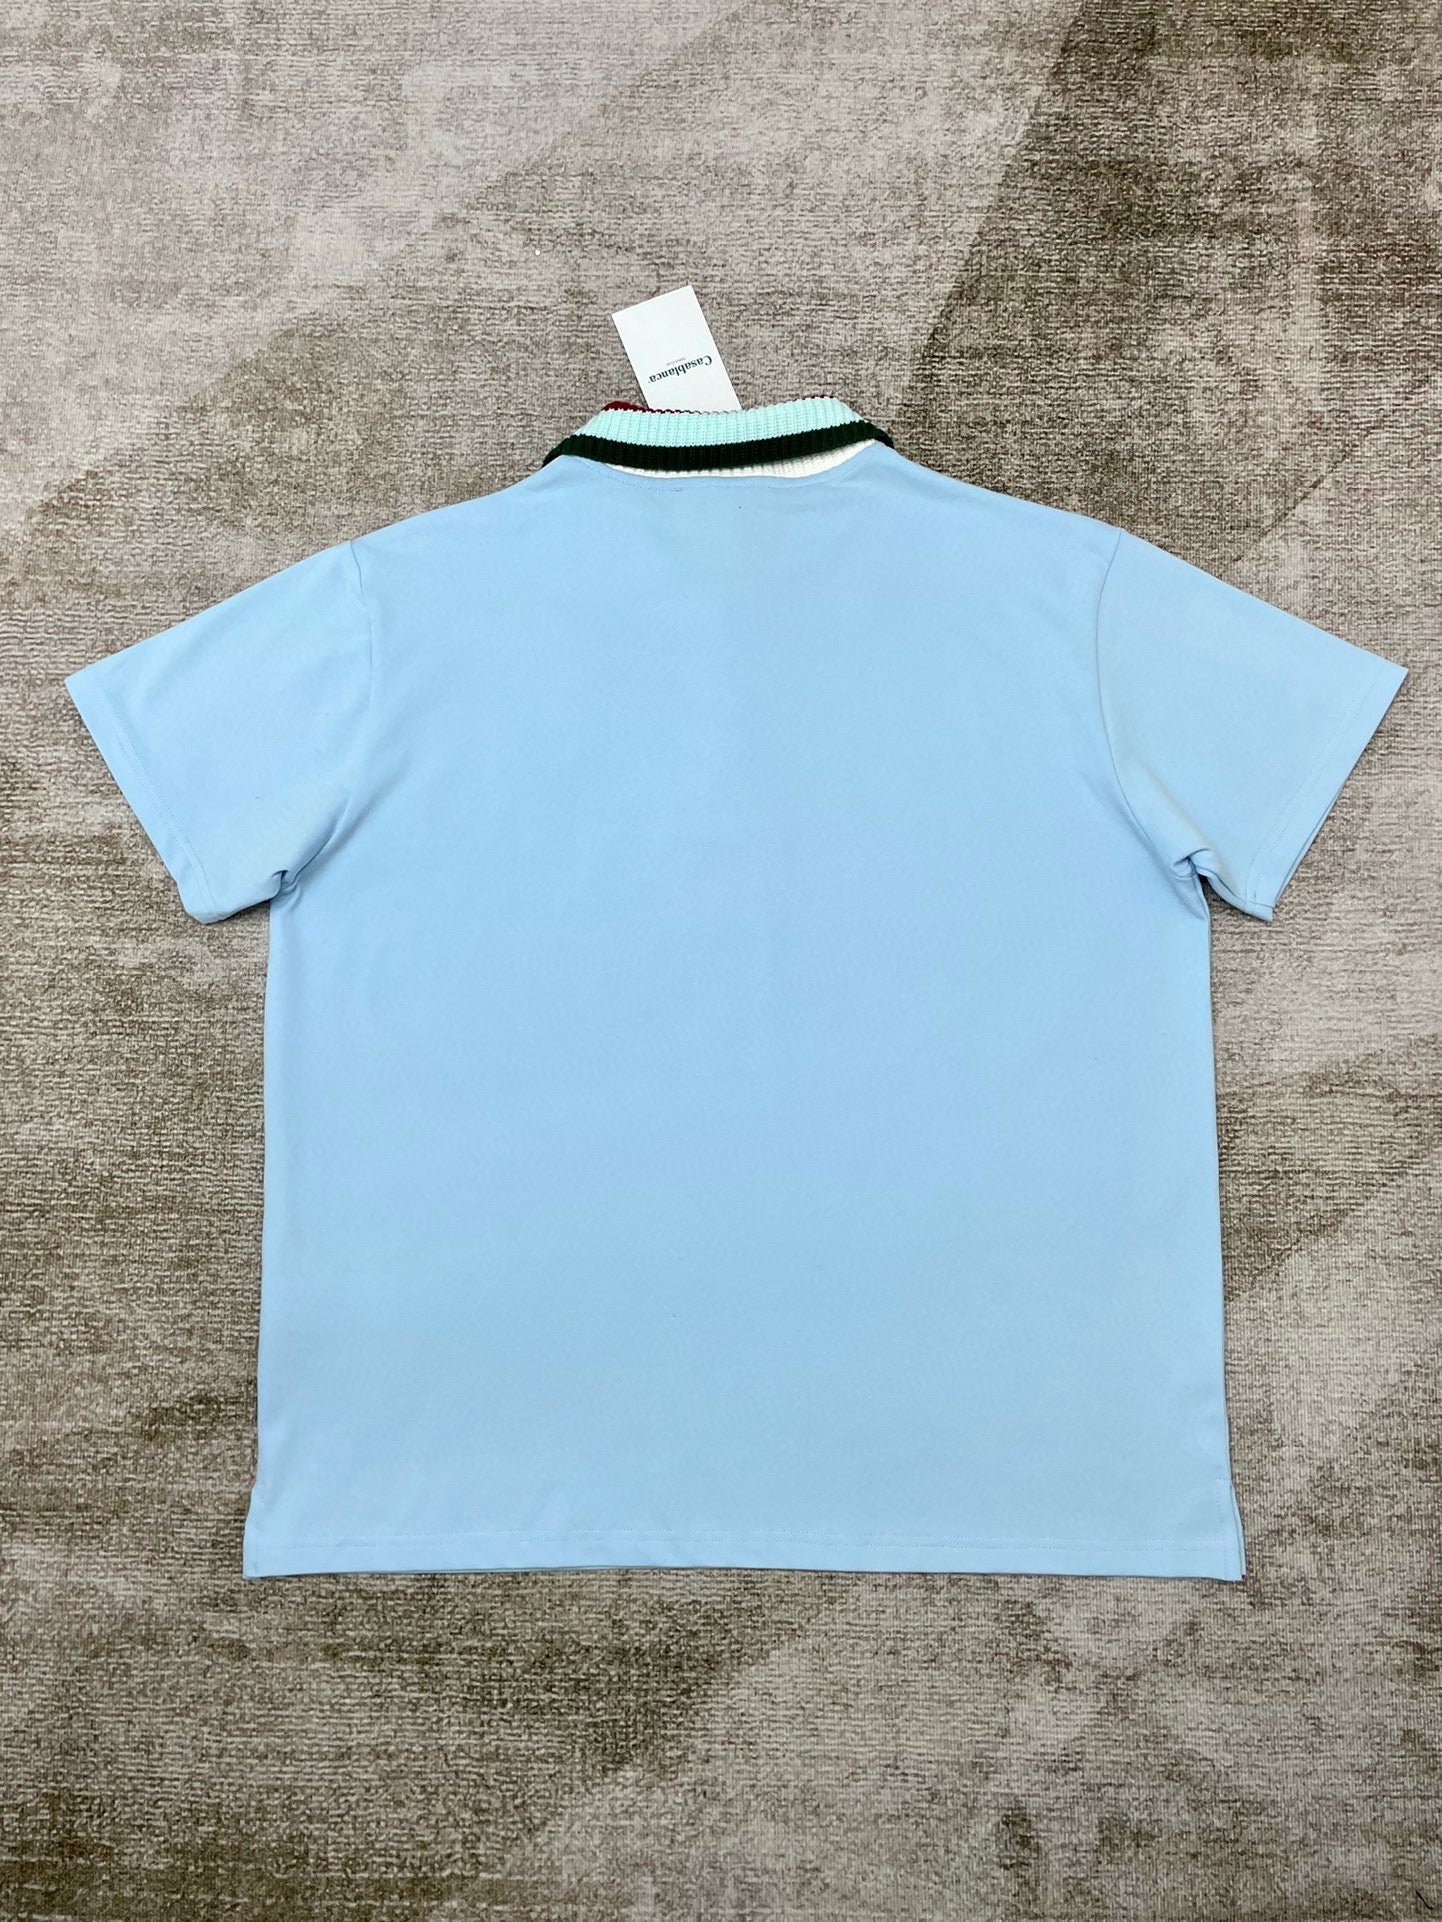 Sky blue T-shirt - Size L